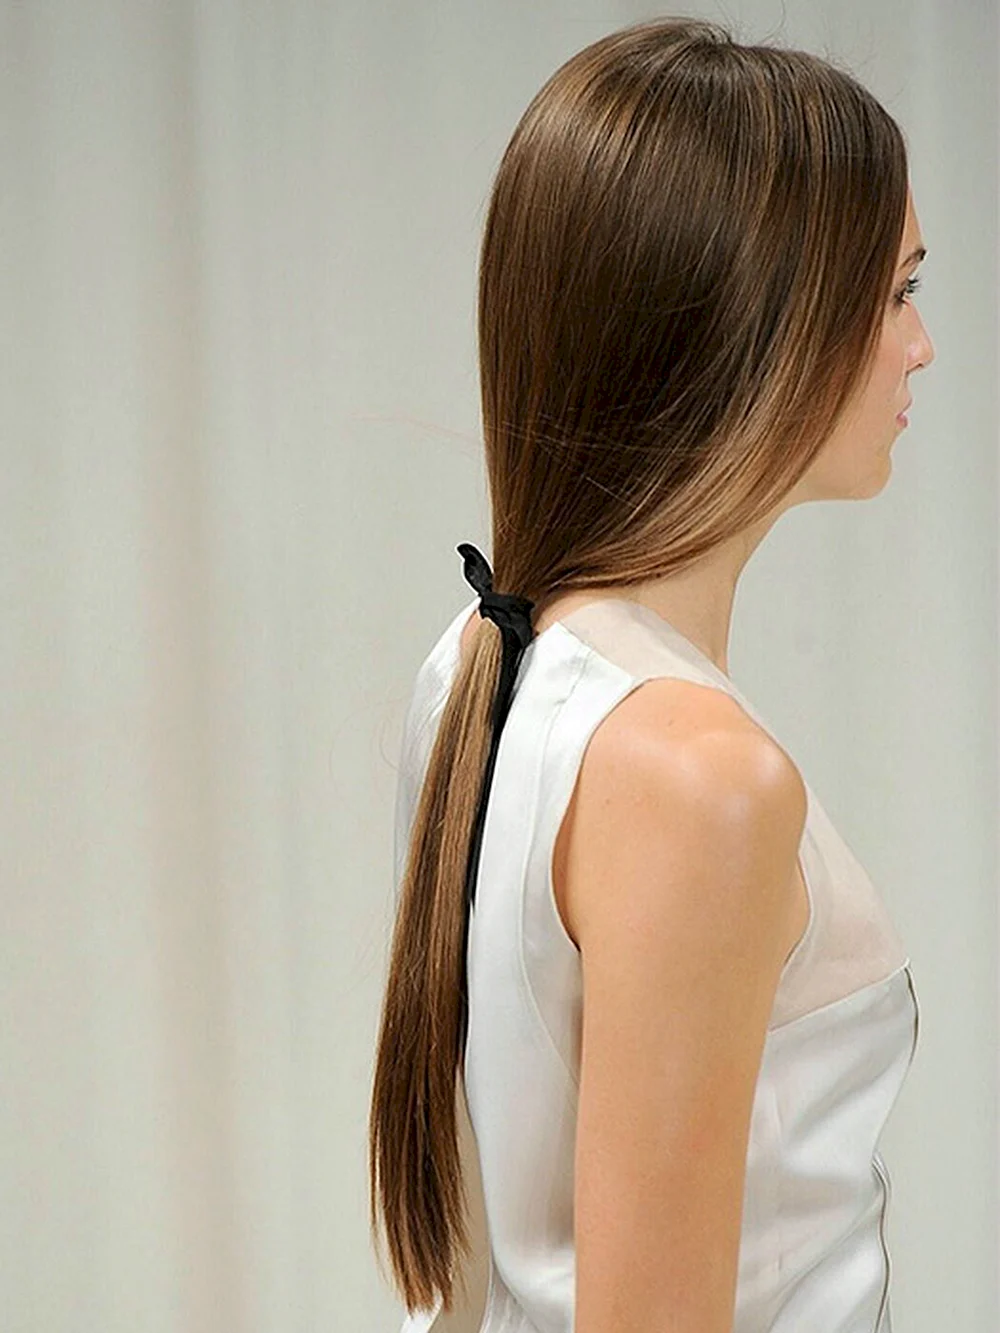 Long ponytail